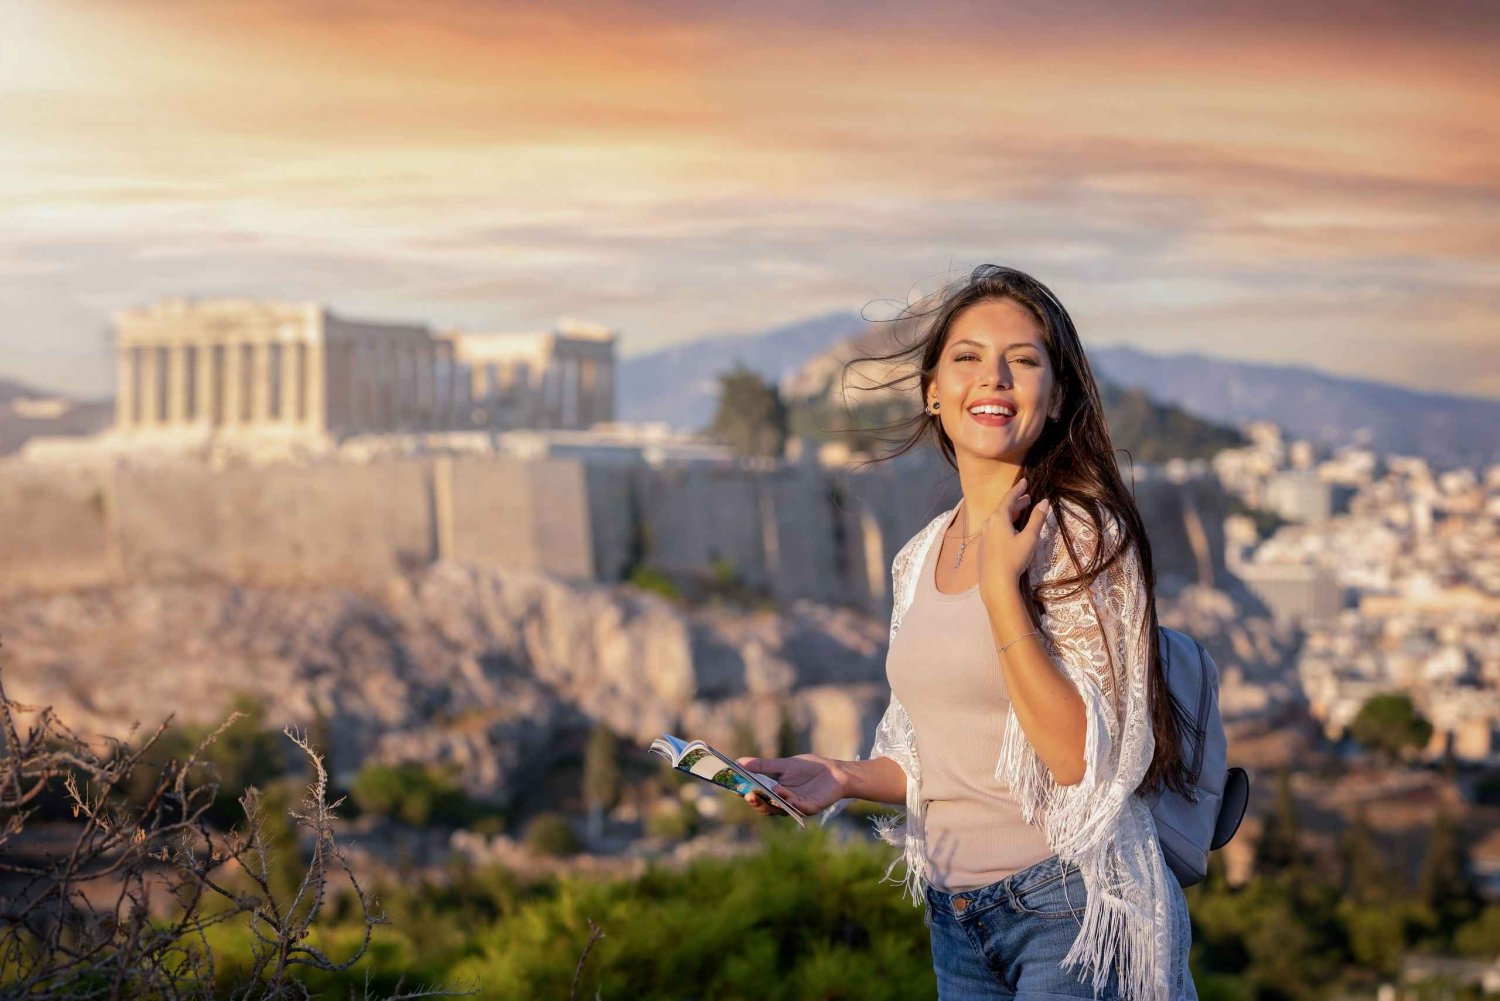 Atenas incrível: Capturando memórias em meio à vista da Acrópole